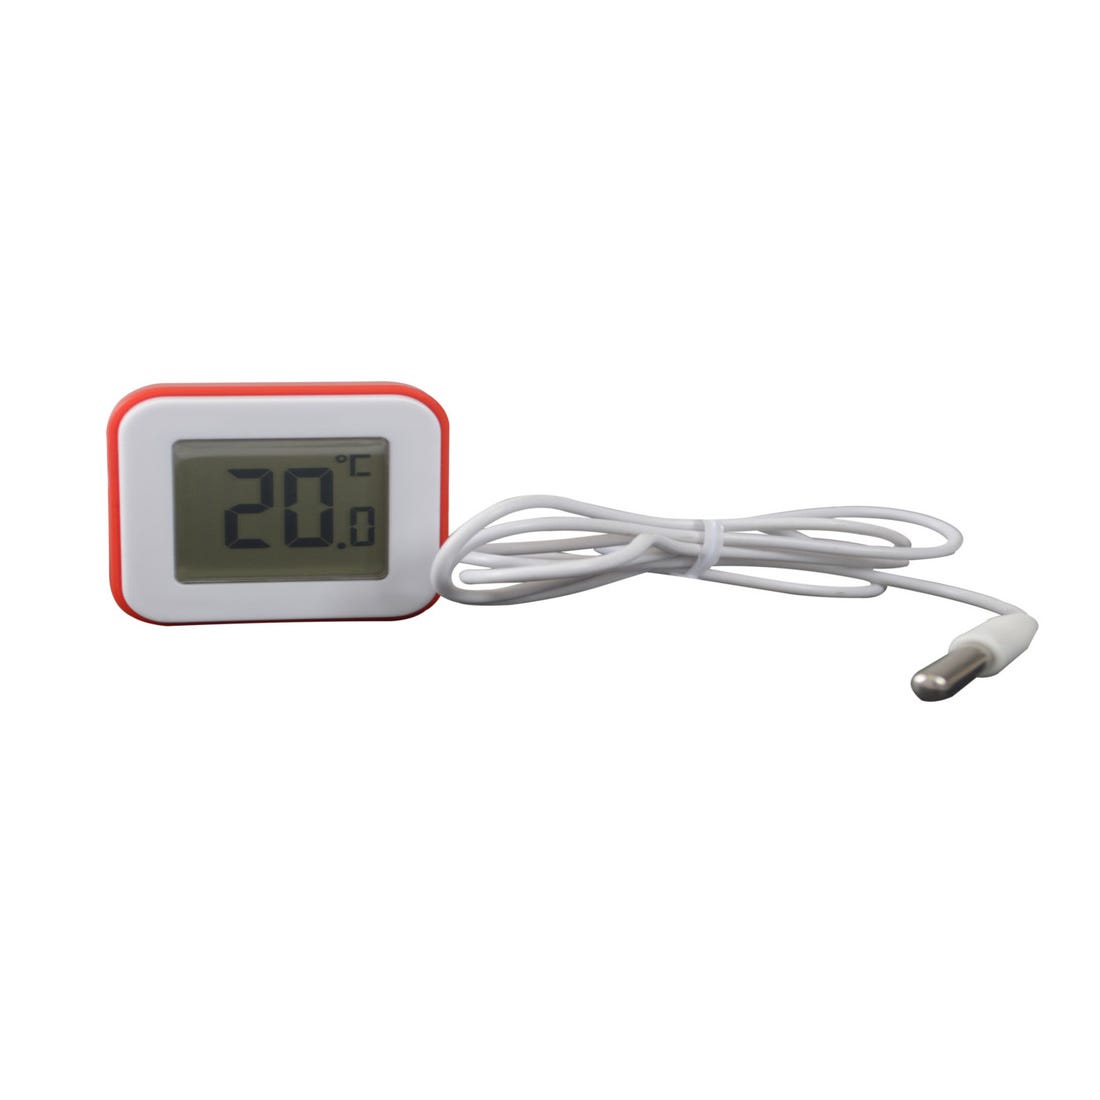 Thermomètre congélateur numérique sans fil moniteur de température intérieu